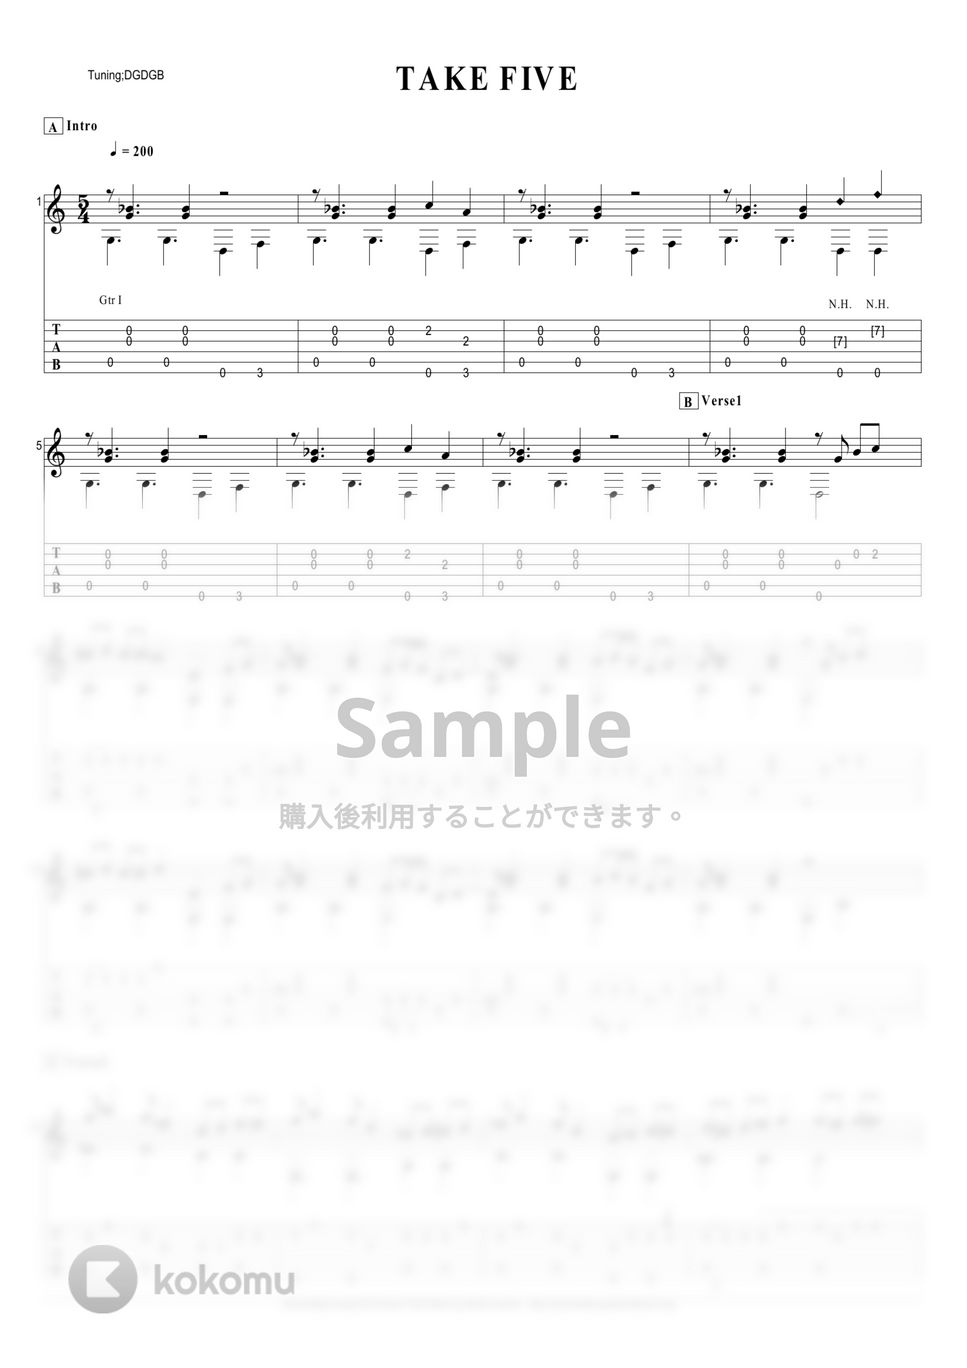 Paul Desmond - Take5 by わたなべゆう